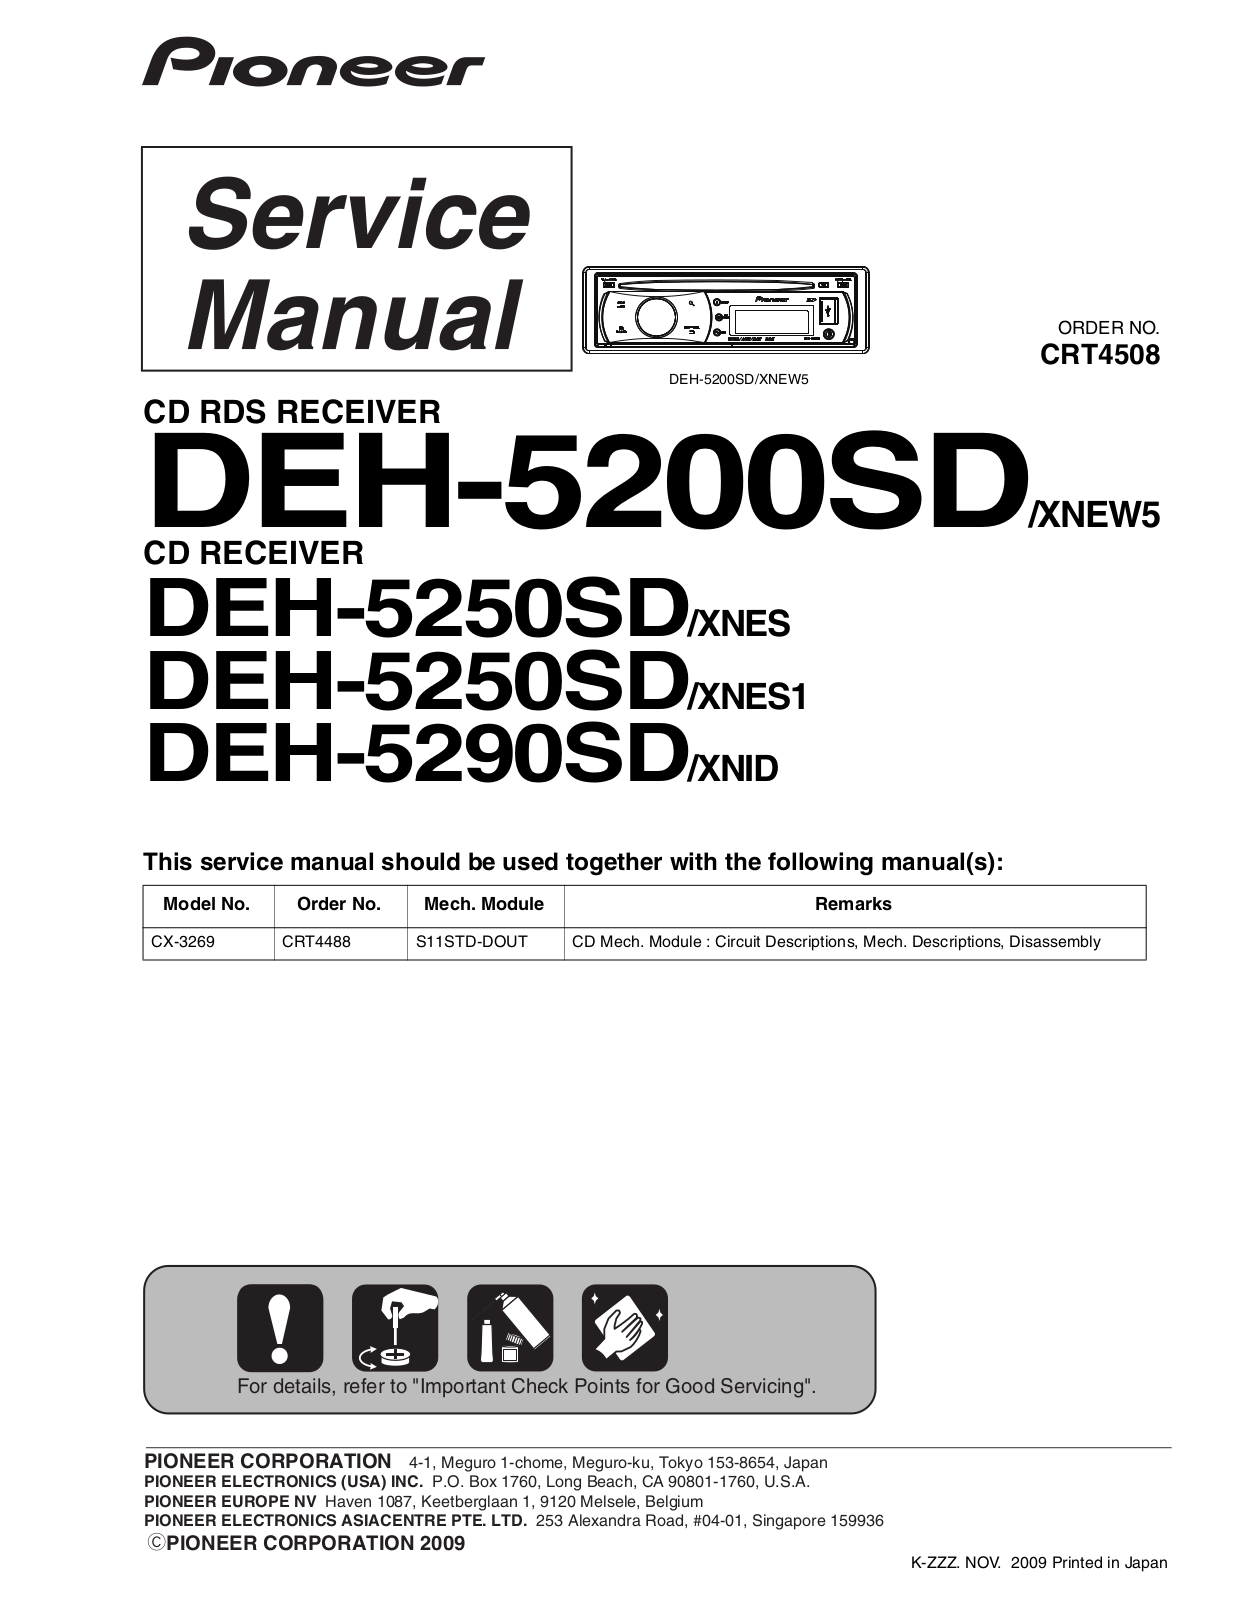 Pioneer DEH-5200-SD, DEH-5250-SD, DEH-5290-SD Service manual